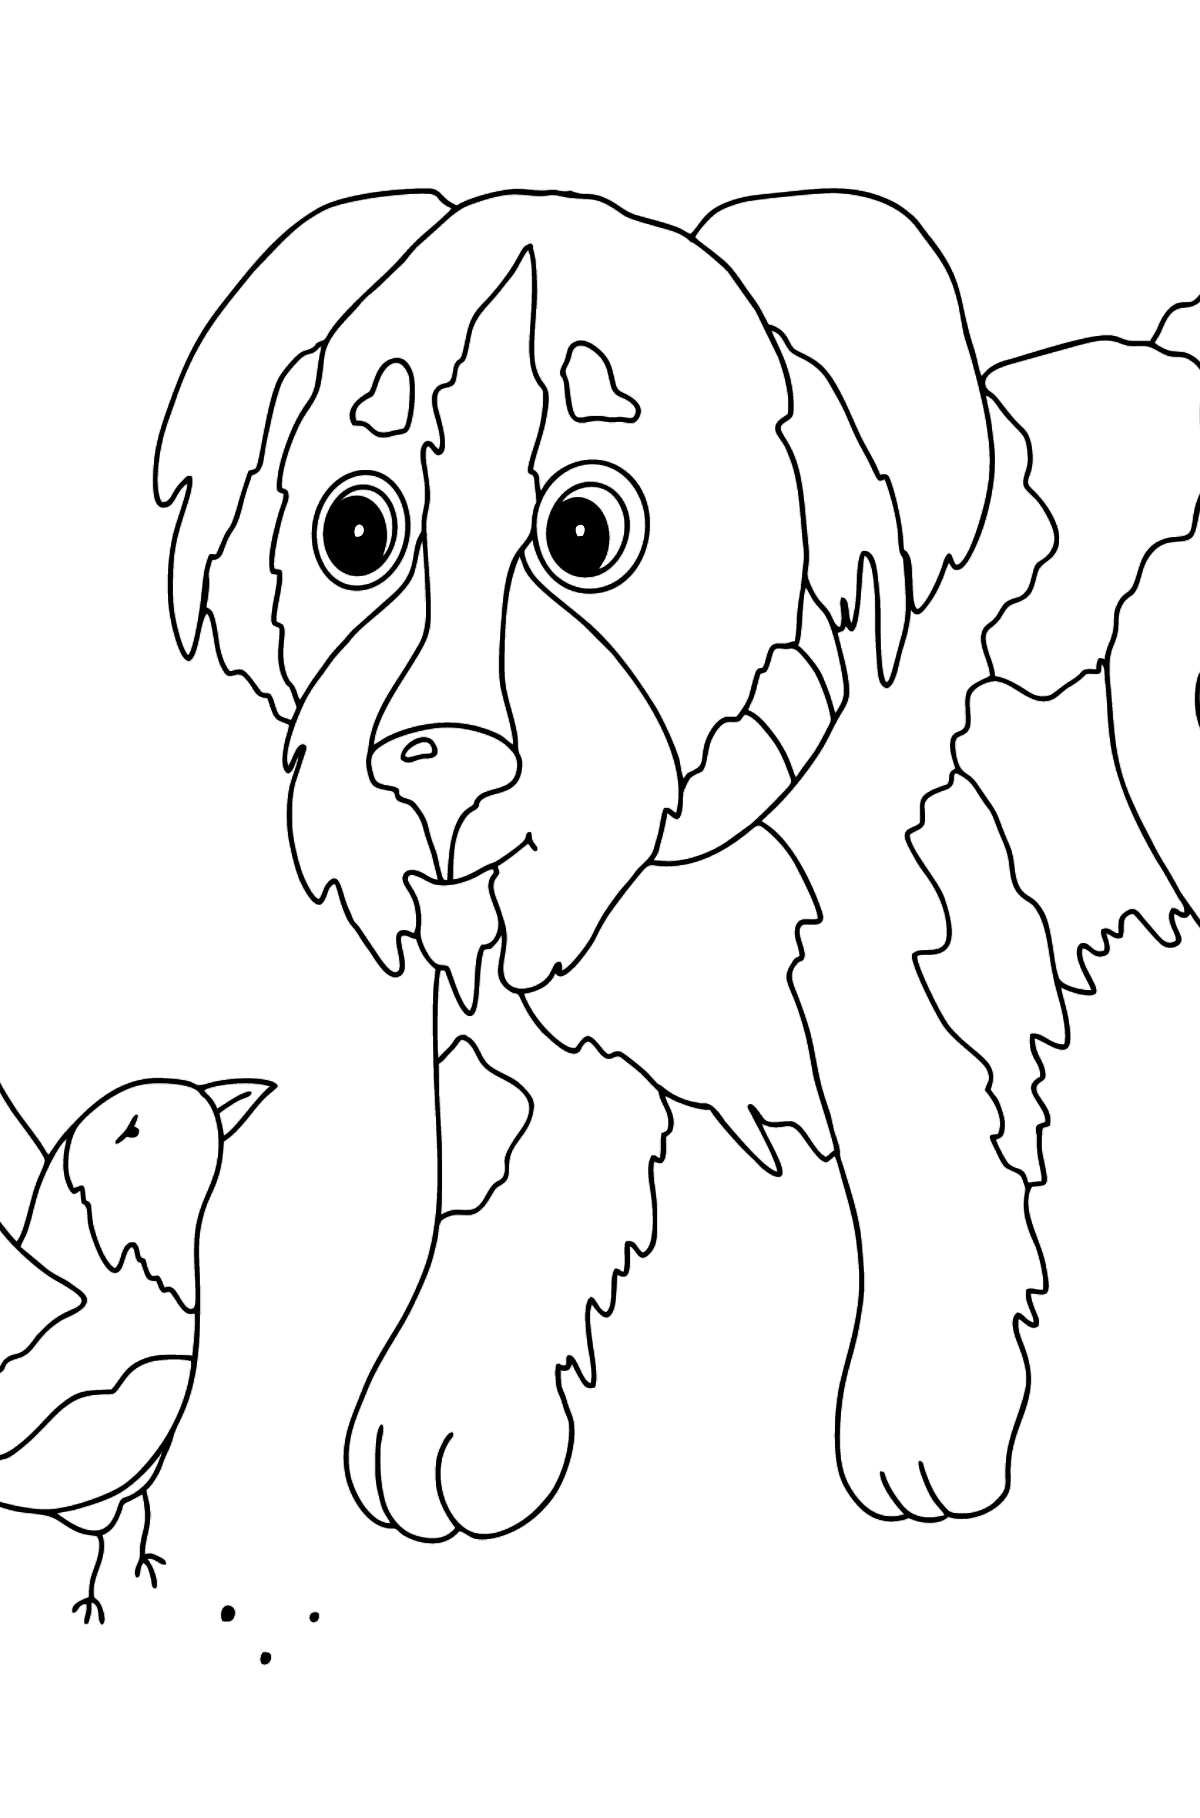 Dibujo para Colorear - Un Perro está Hablando con una Ave - Dibujos para Colorear para Niños